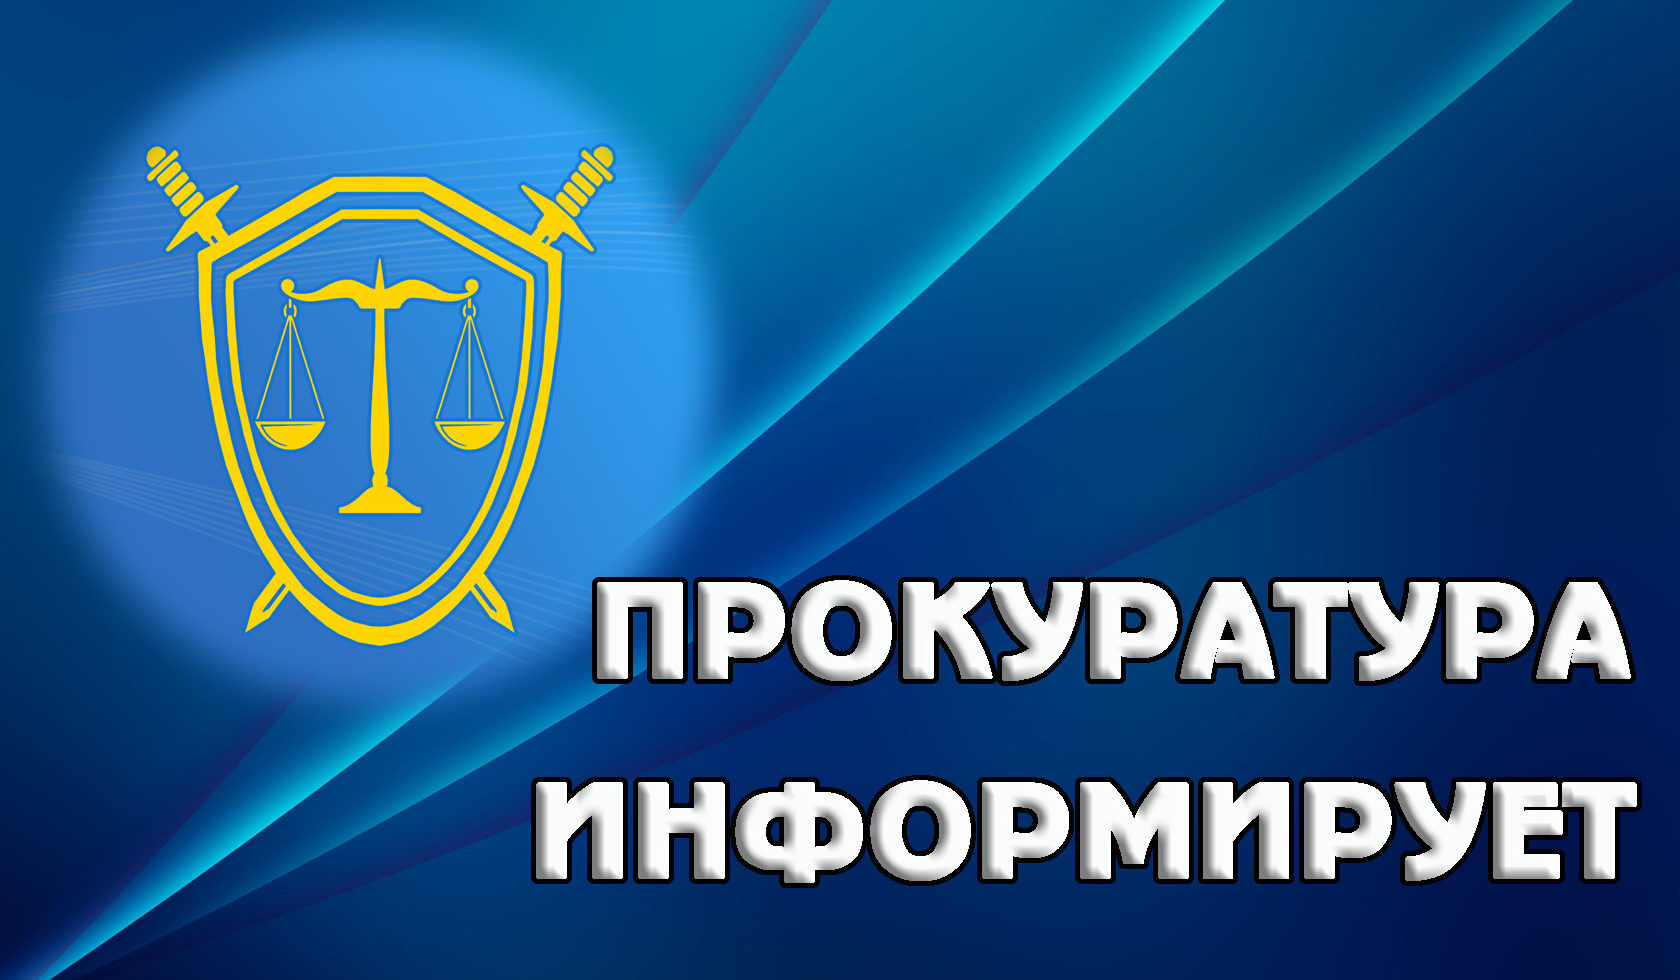 Прокуратура Засвияжского района г. Ульяновска разъясняет аспекты привлечения к уголовной ответственности за клевету.